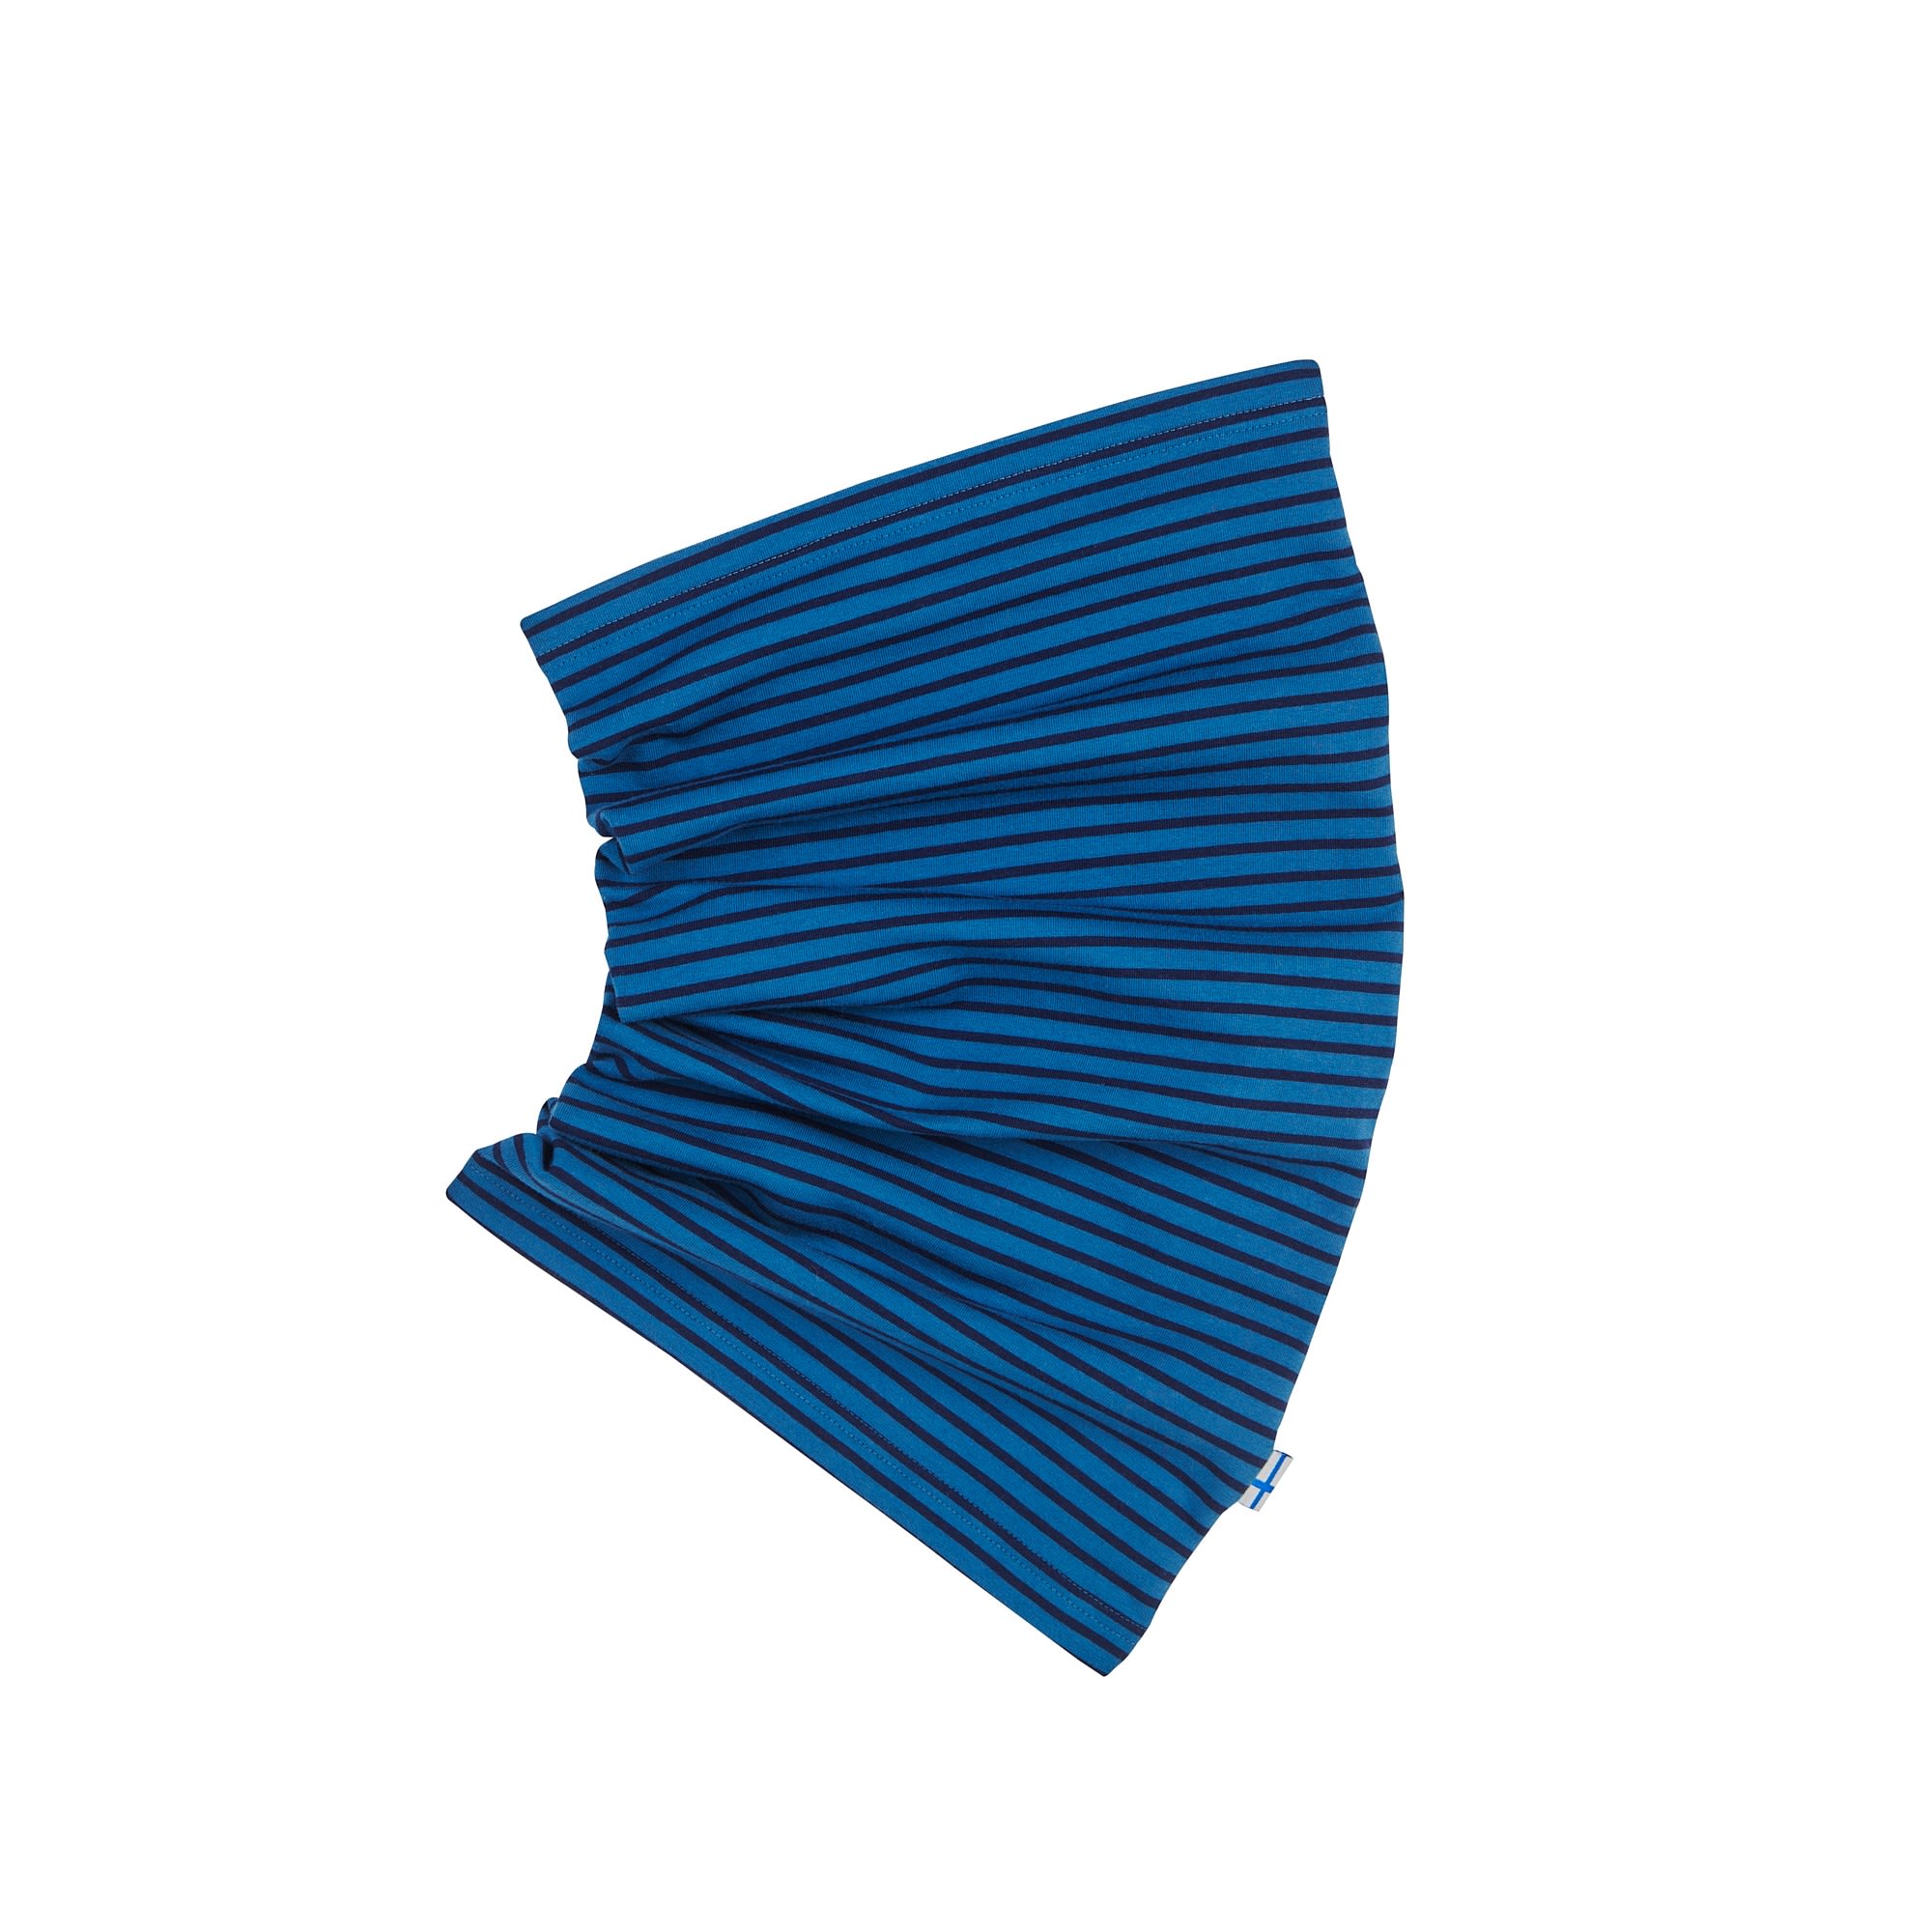 Finkid Tunneli Twist Gestreift - Blau- Schals und Halstcher- Grsse One Size - Farbe Real Teal - Navy